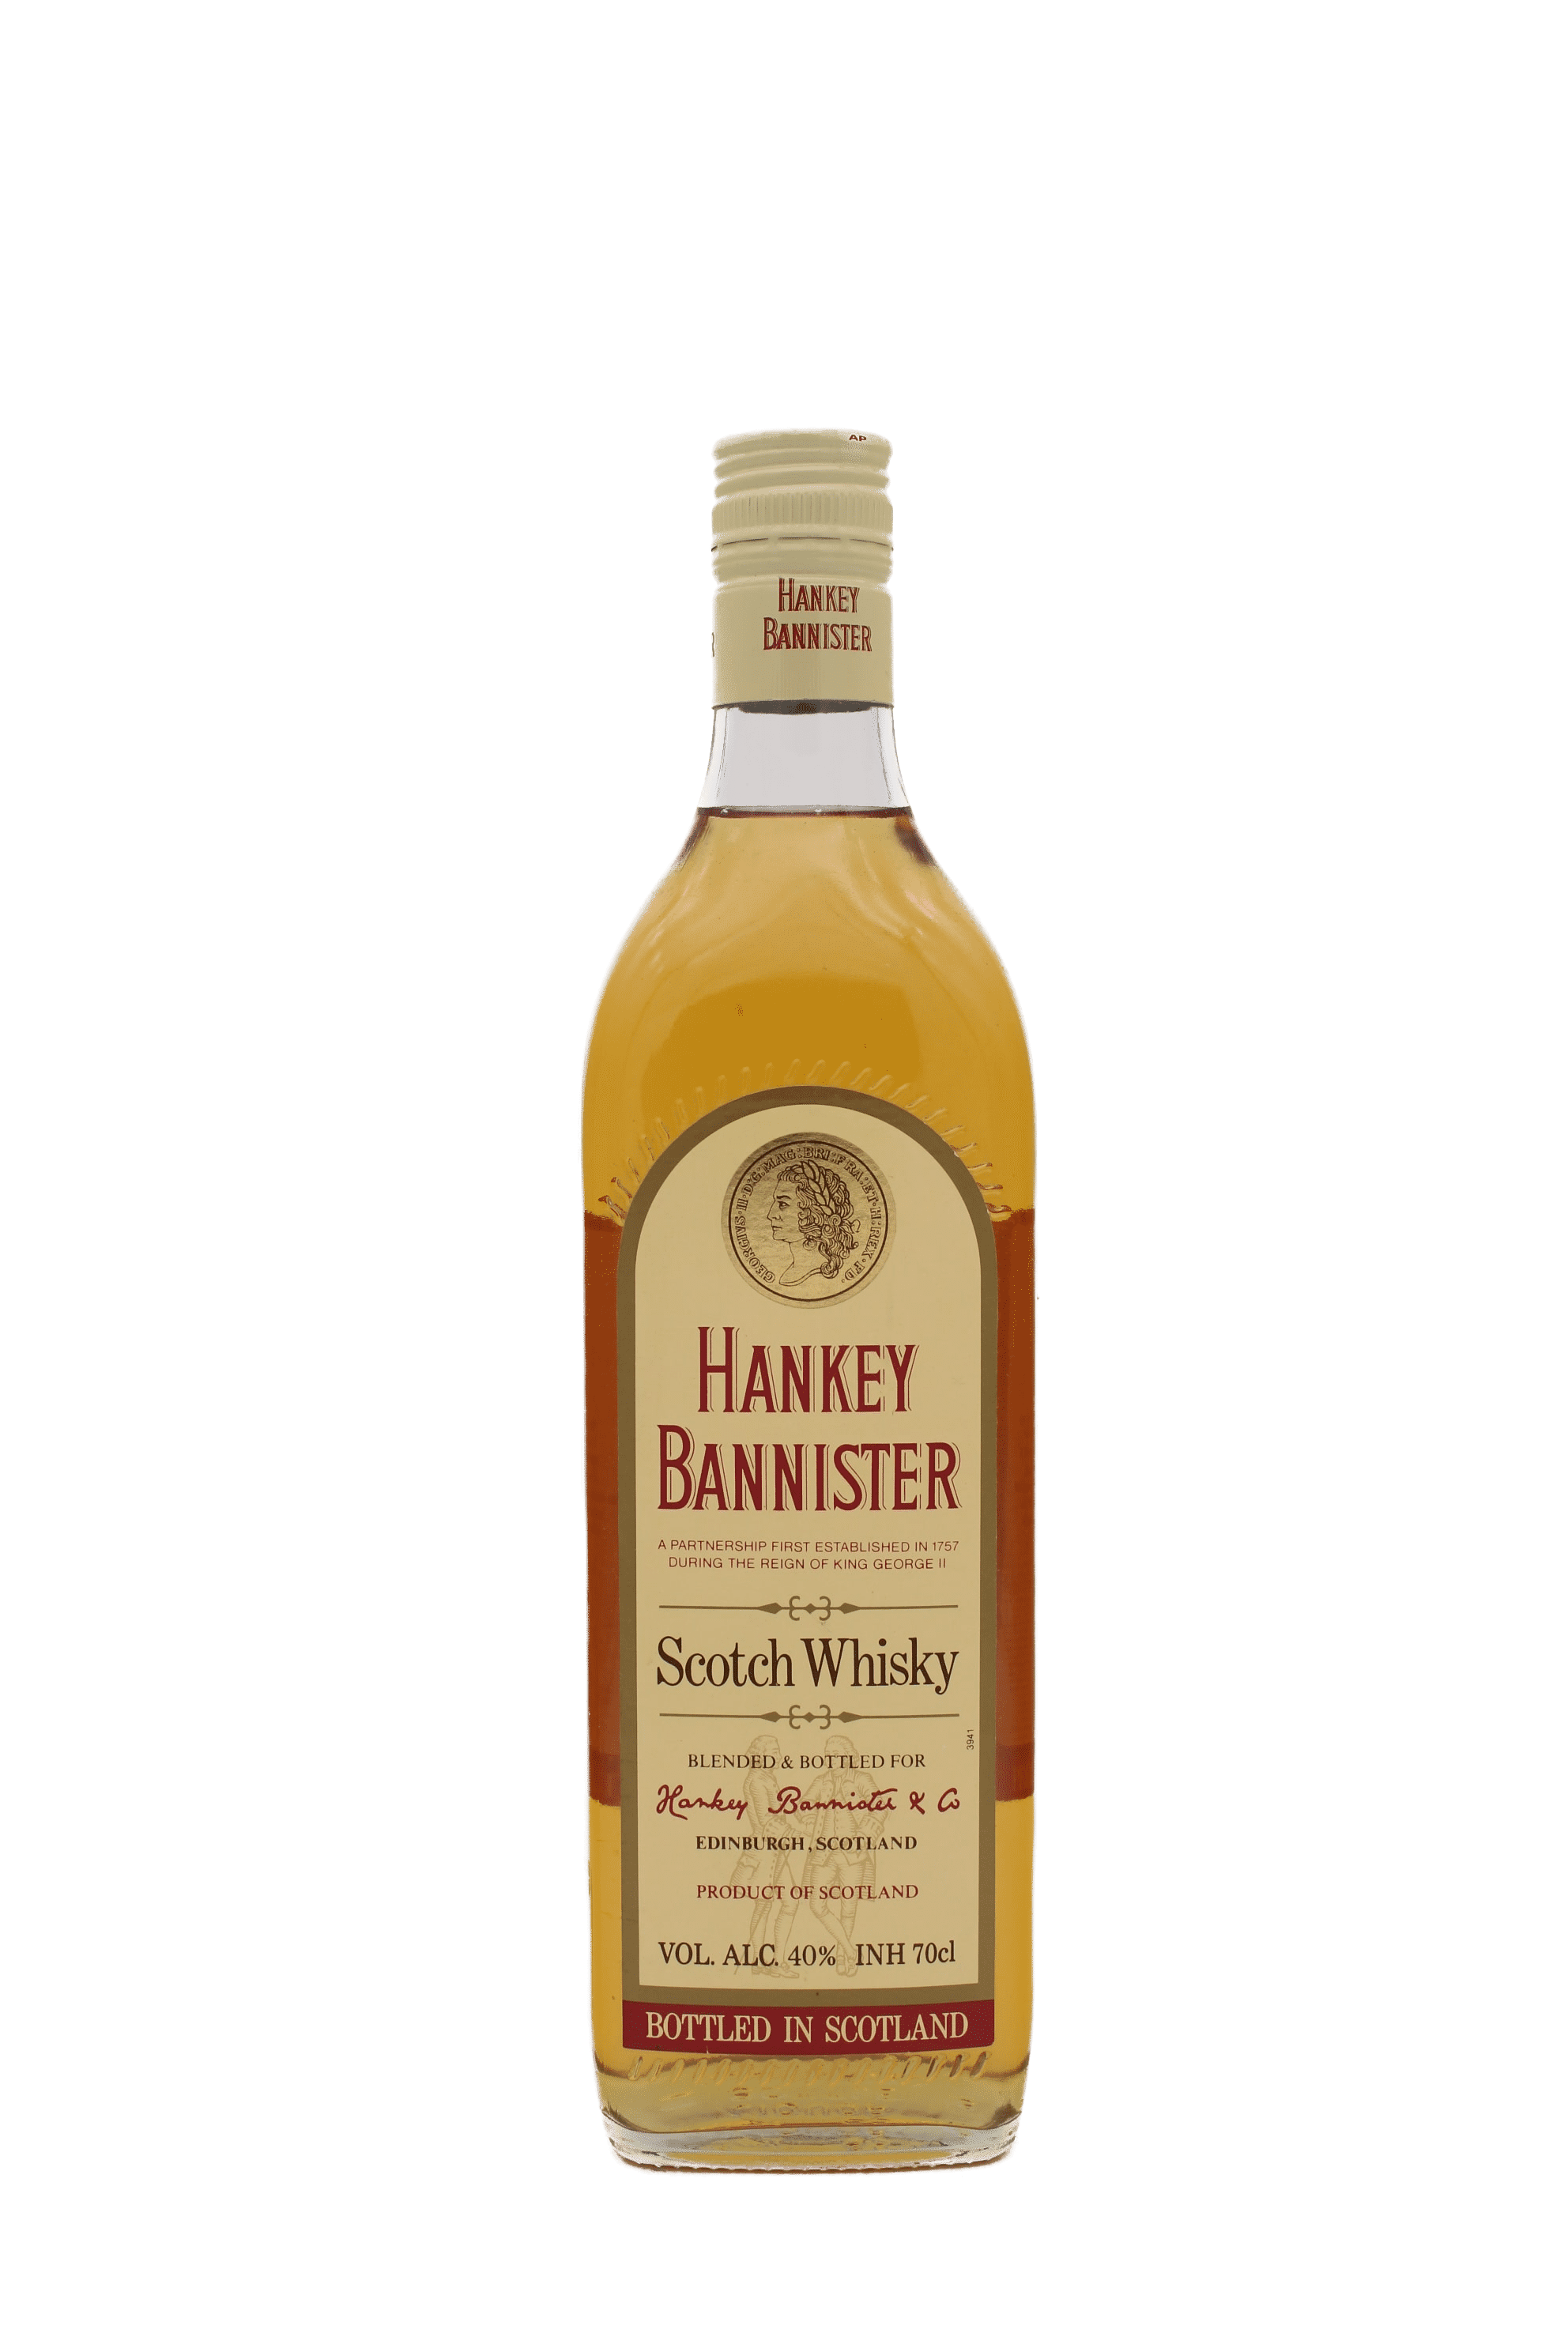 Hankey Bannister Scotch Whisky (Old bottle)